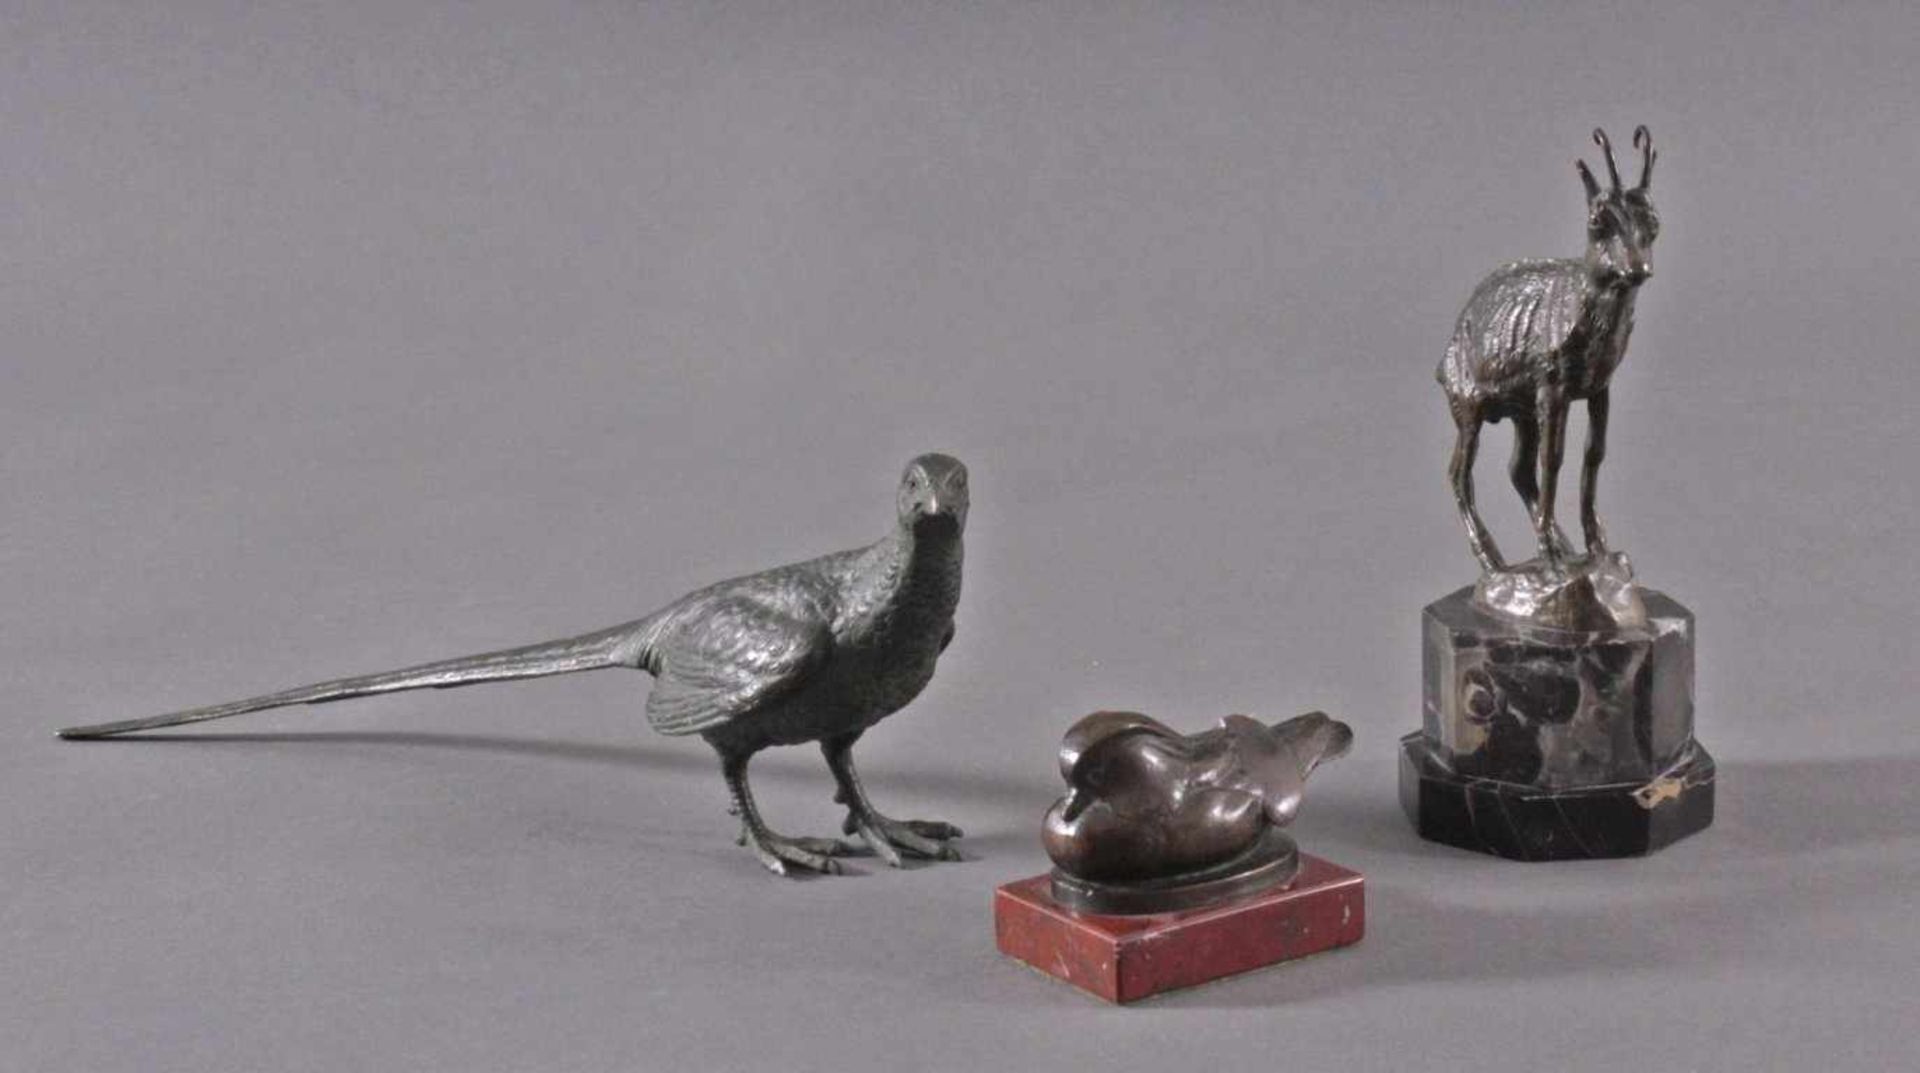 Drei Bronze-TierplastikenRebhuhn, Spatz und Gämse, Bronze patiniert, ungemarkt.Vollplastische und